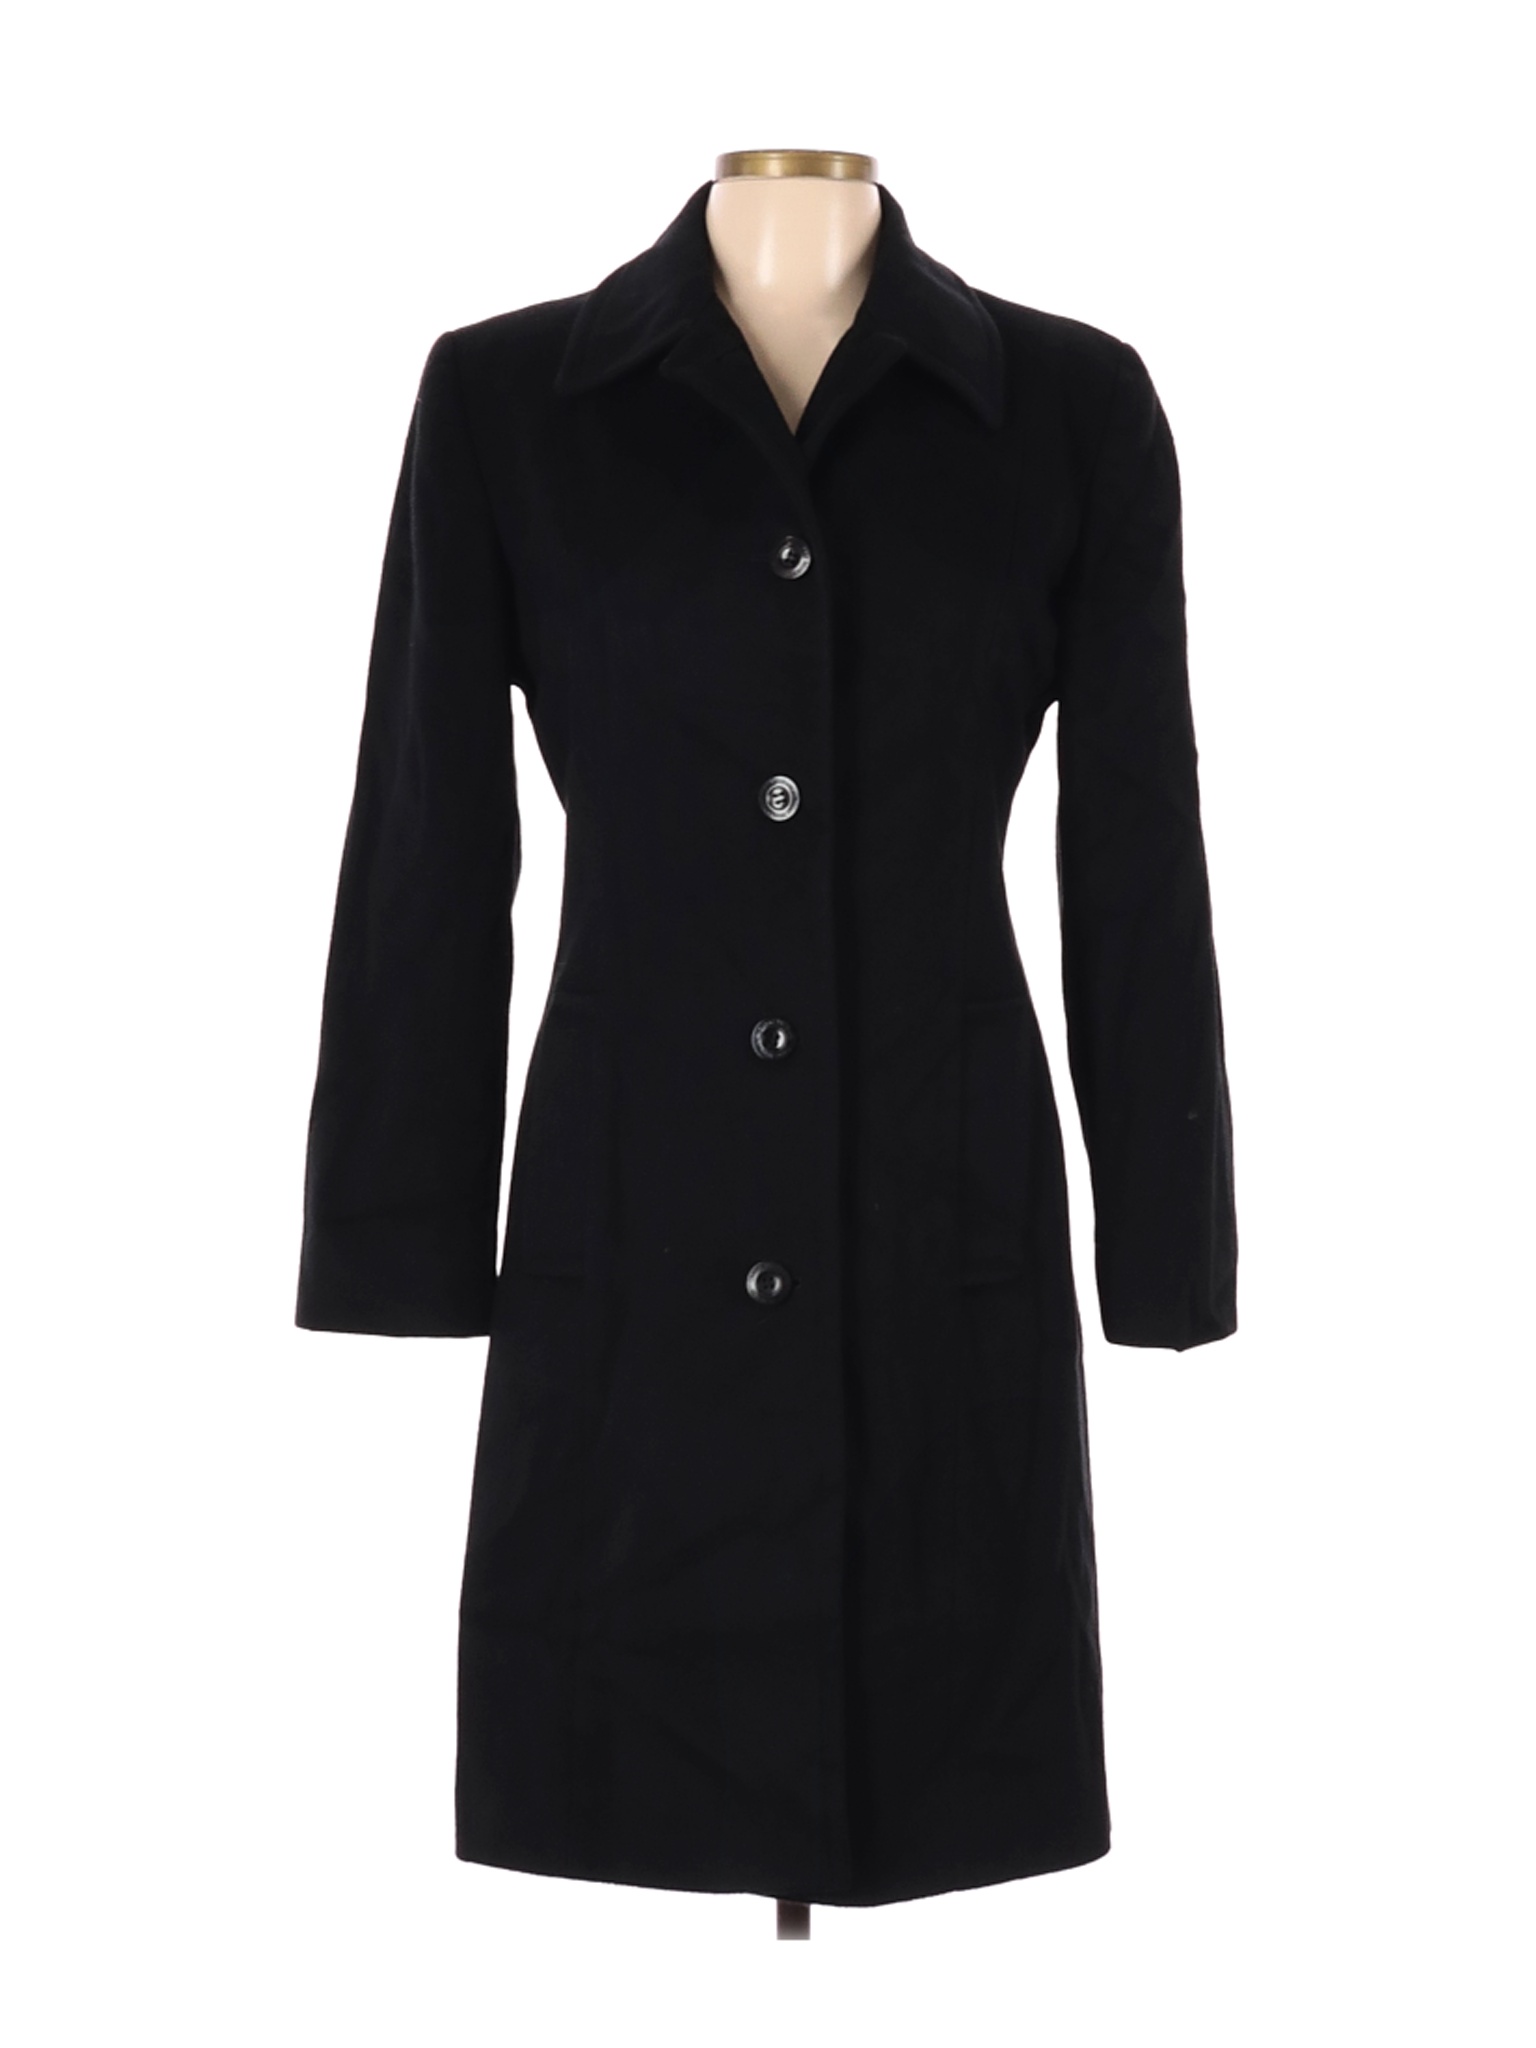 Isaac Mizrahi Women Black Coat 10 | eBay